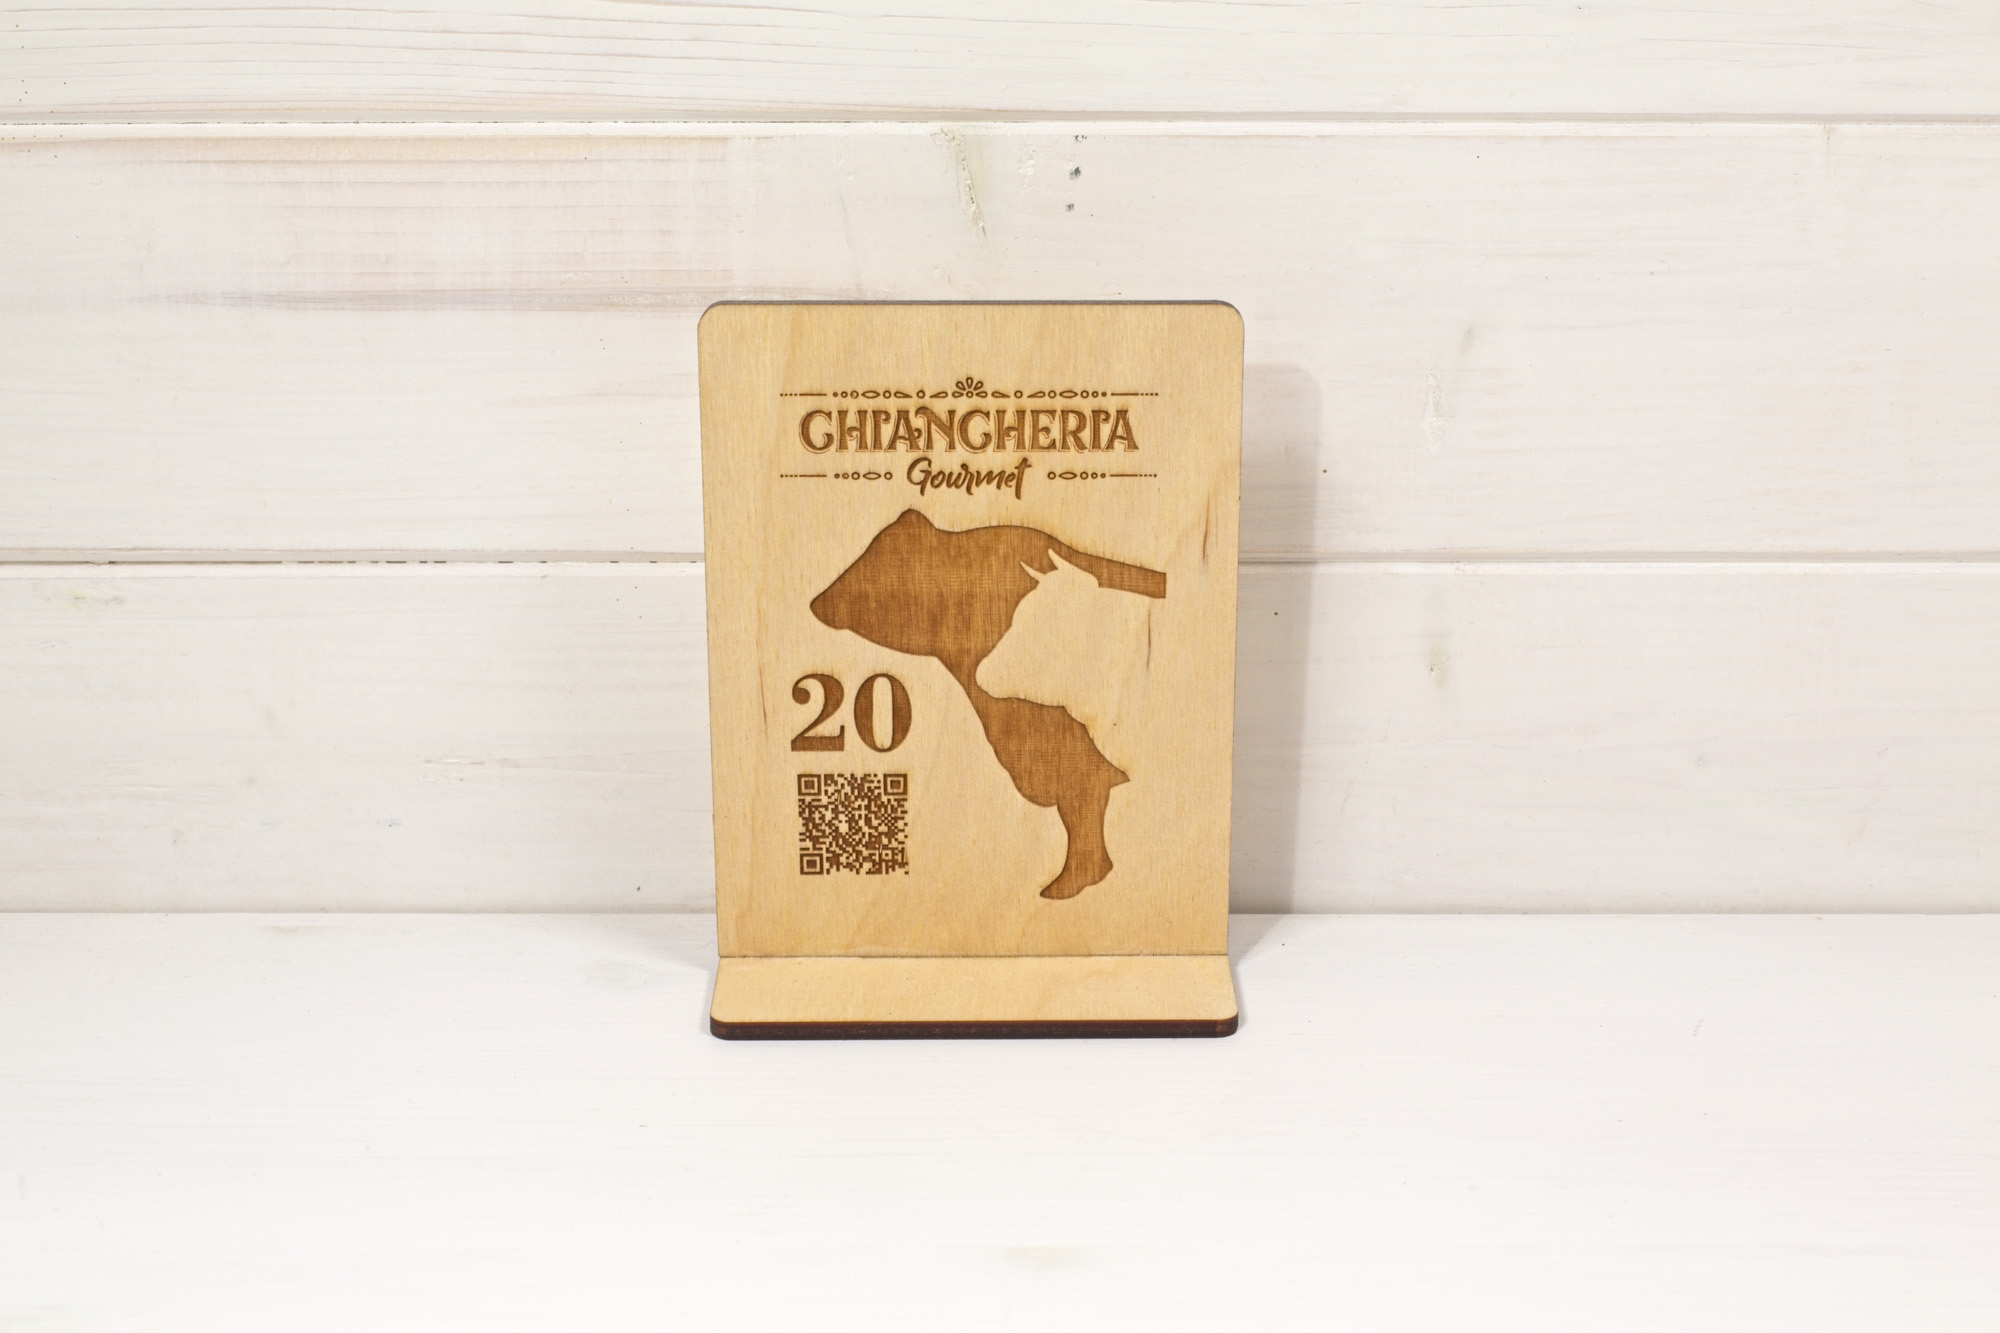 Gran Camurria - segnatavolo Chiancheria - legno colore naturale